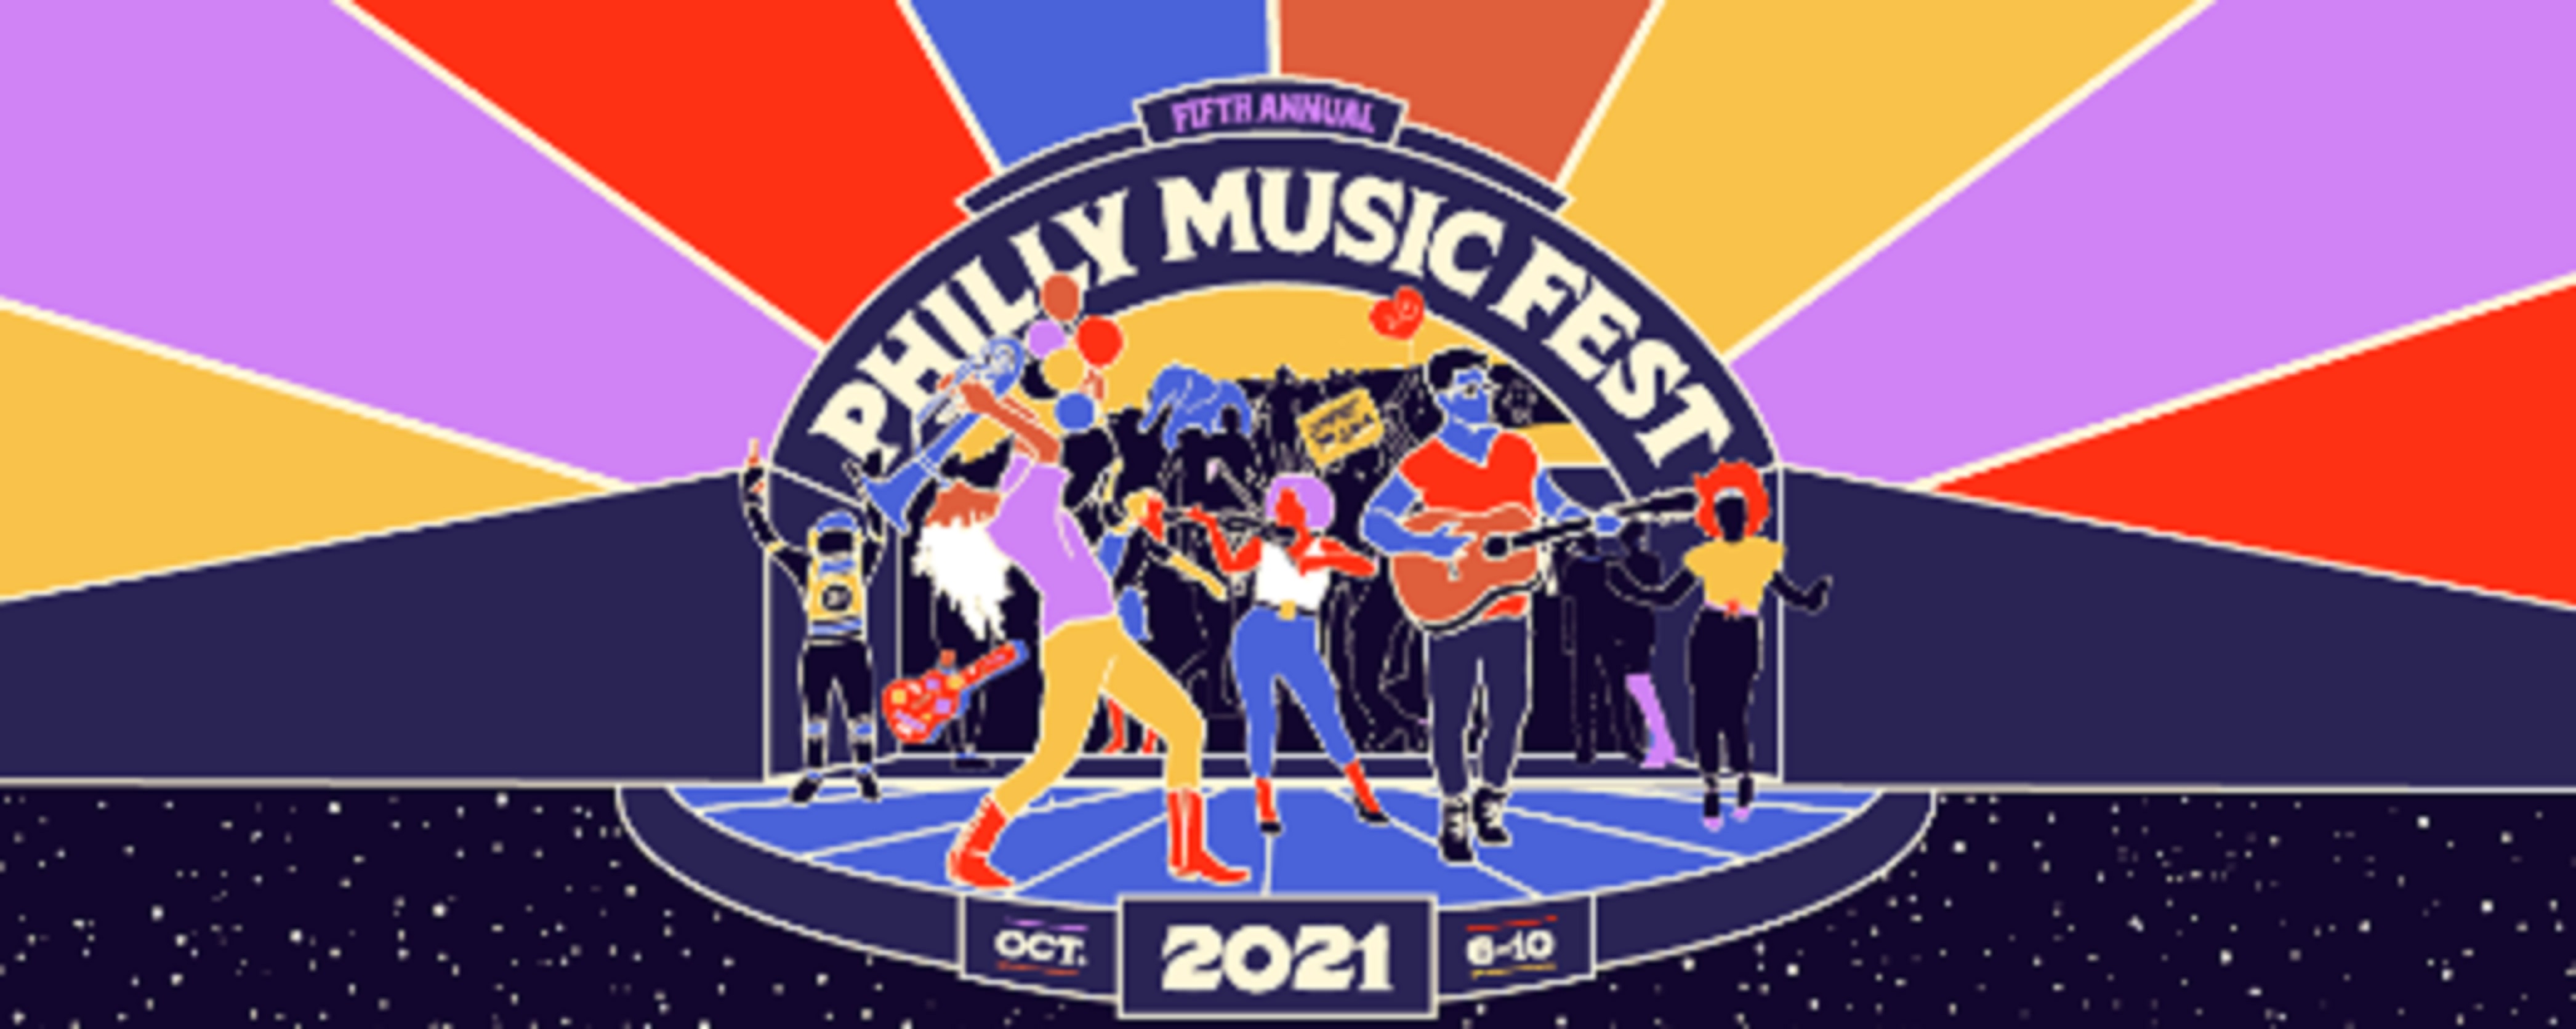 Philly Music Fest Announces 2021 Line Up, Venues & Dates